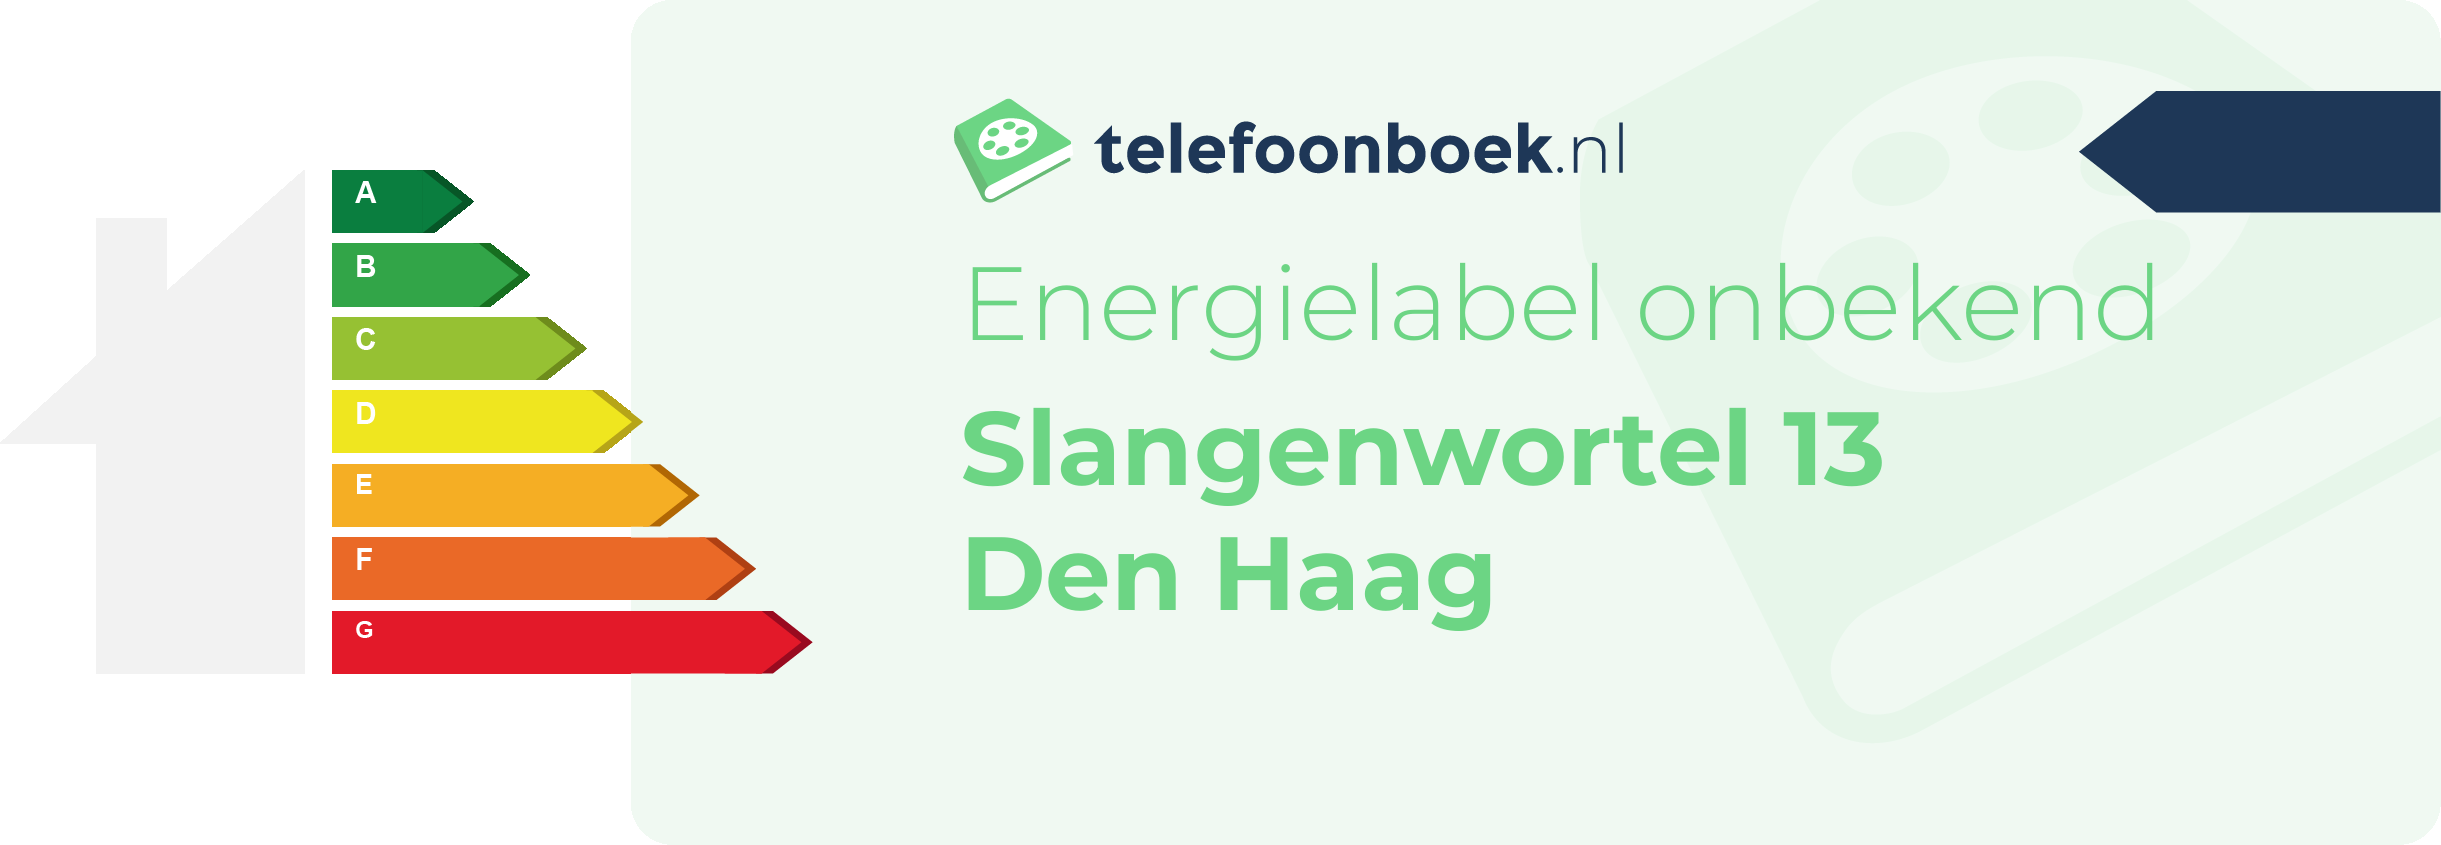 Energielabel Slangenwortel 13 Den Haag